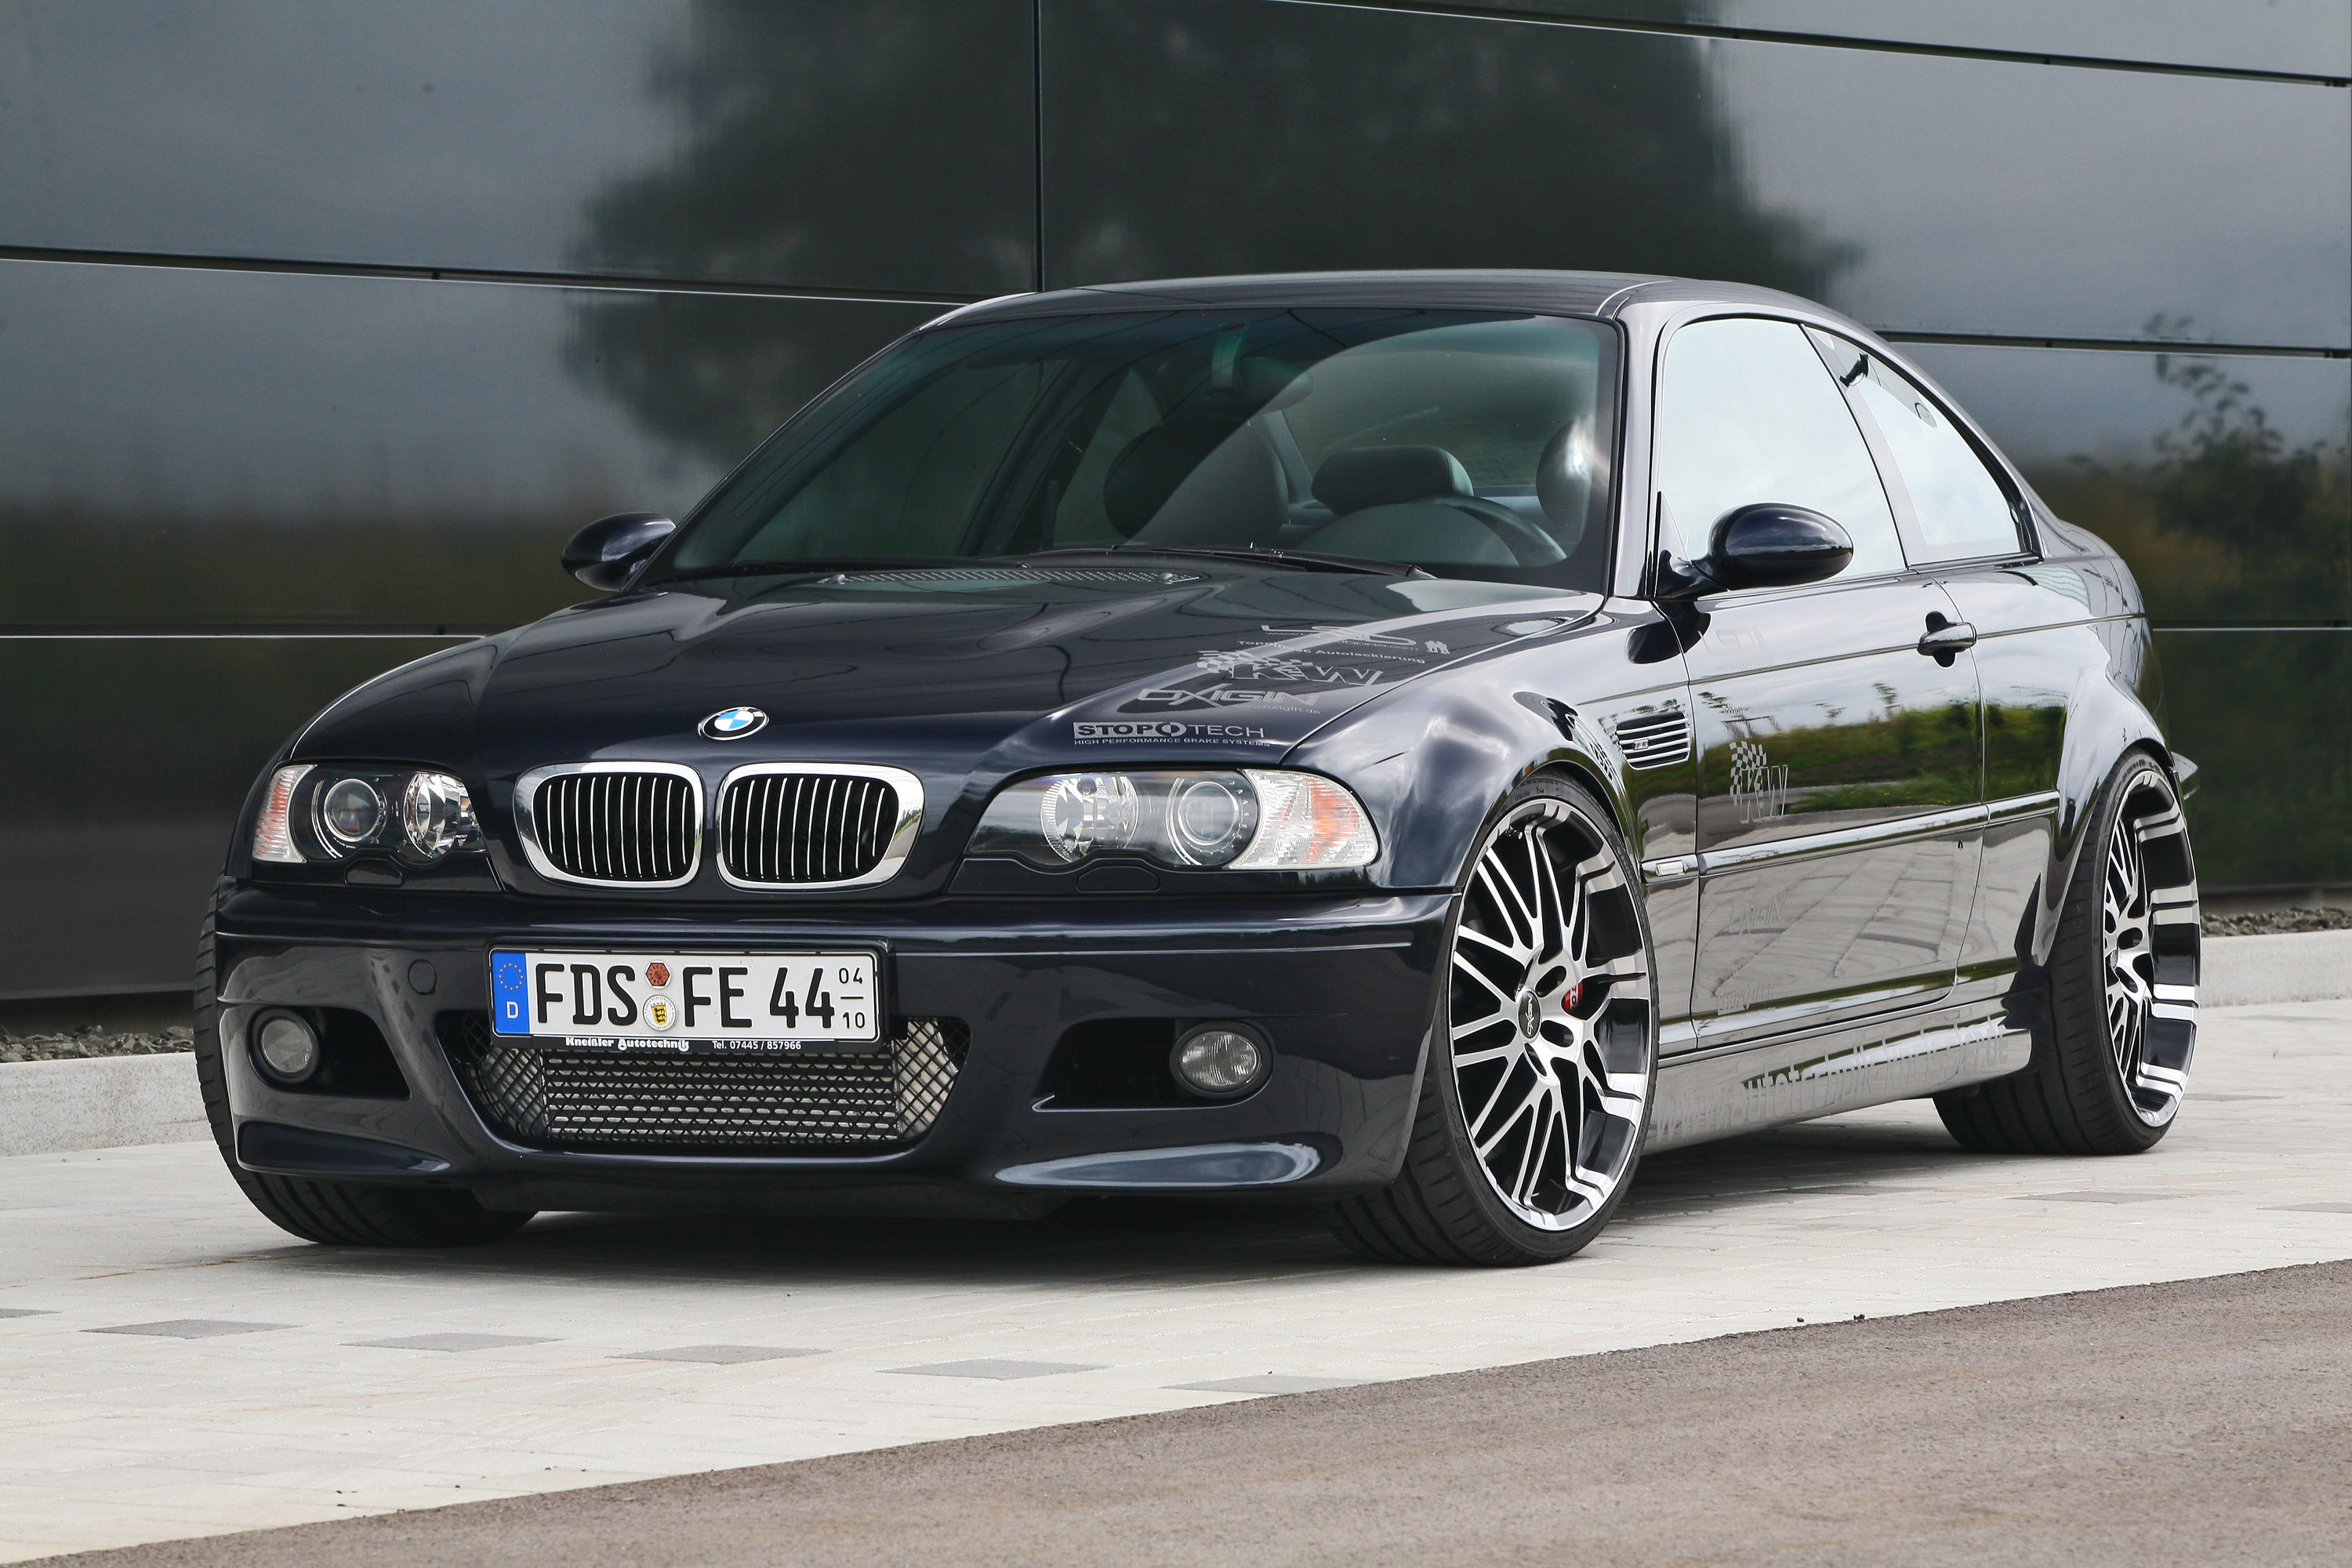 E46 coupe. BMW m3 e46. БМВ 3 е46. BMW 3 e46 Coupe. BMW e46 Coupe m3.